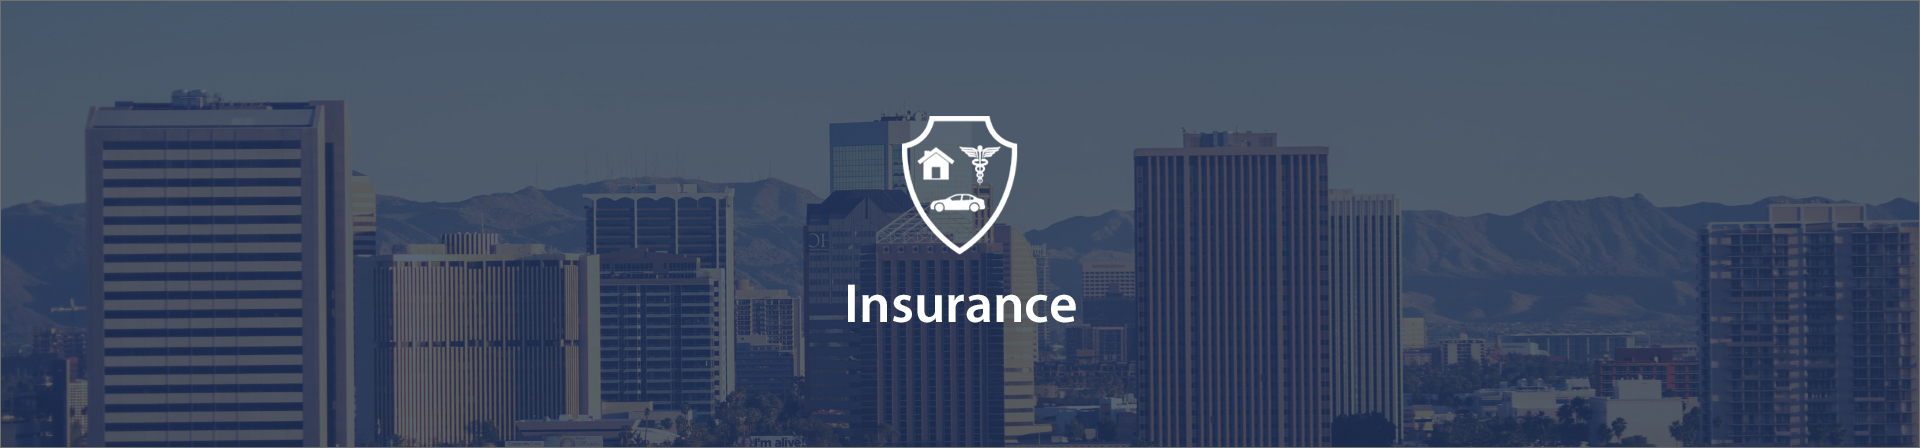 Insurance banner